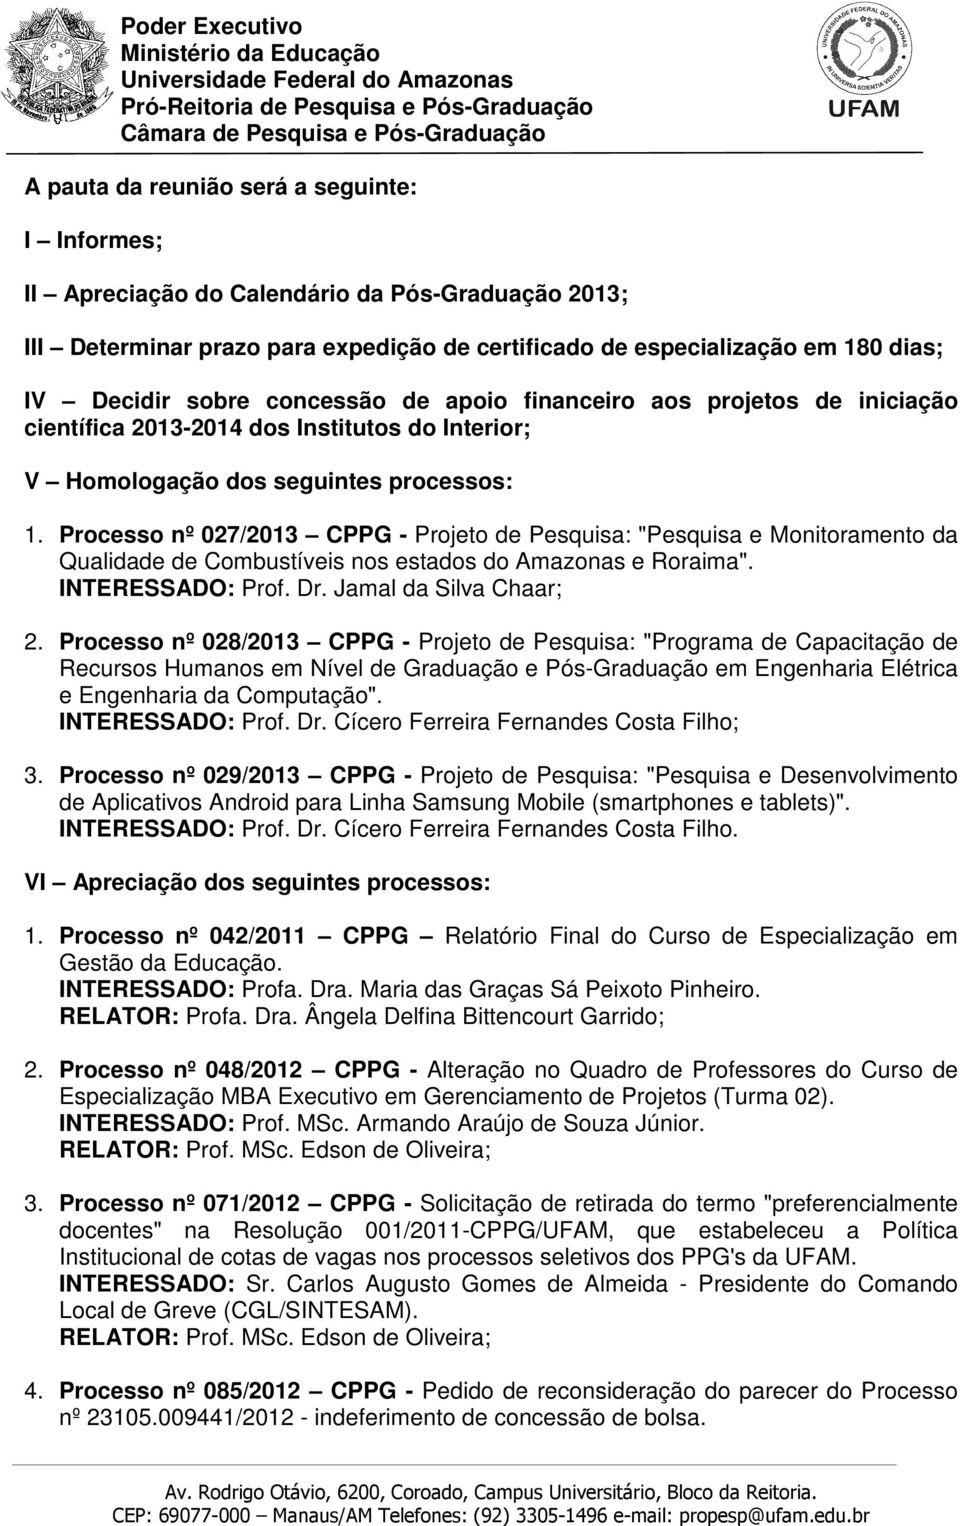 Processo nº 027/2013 CPPG - Projeto de Pesquisa: "Pesquisa e Monitoramento da Qualidade de Combustíveis nos estados do Amazonas e Roraima". INTERESSADO: Prof. Dr. Jamal da Silva Chaar; 2.